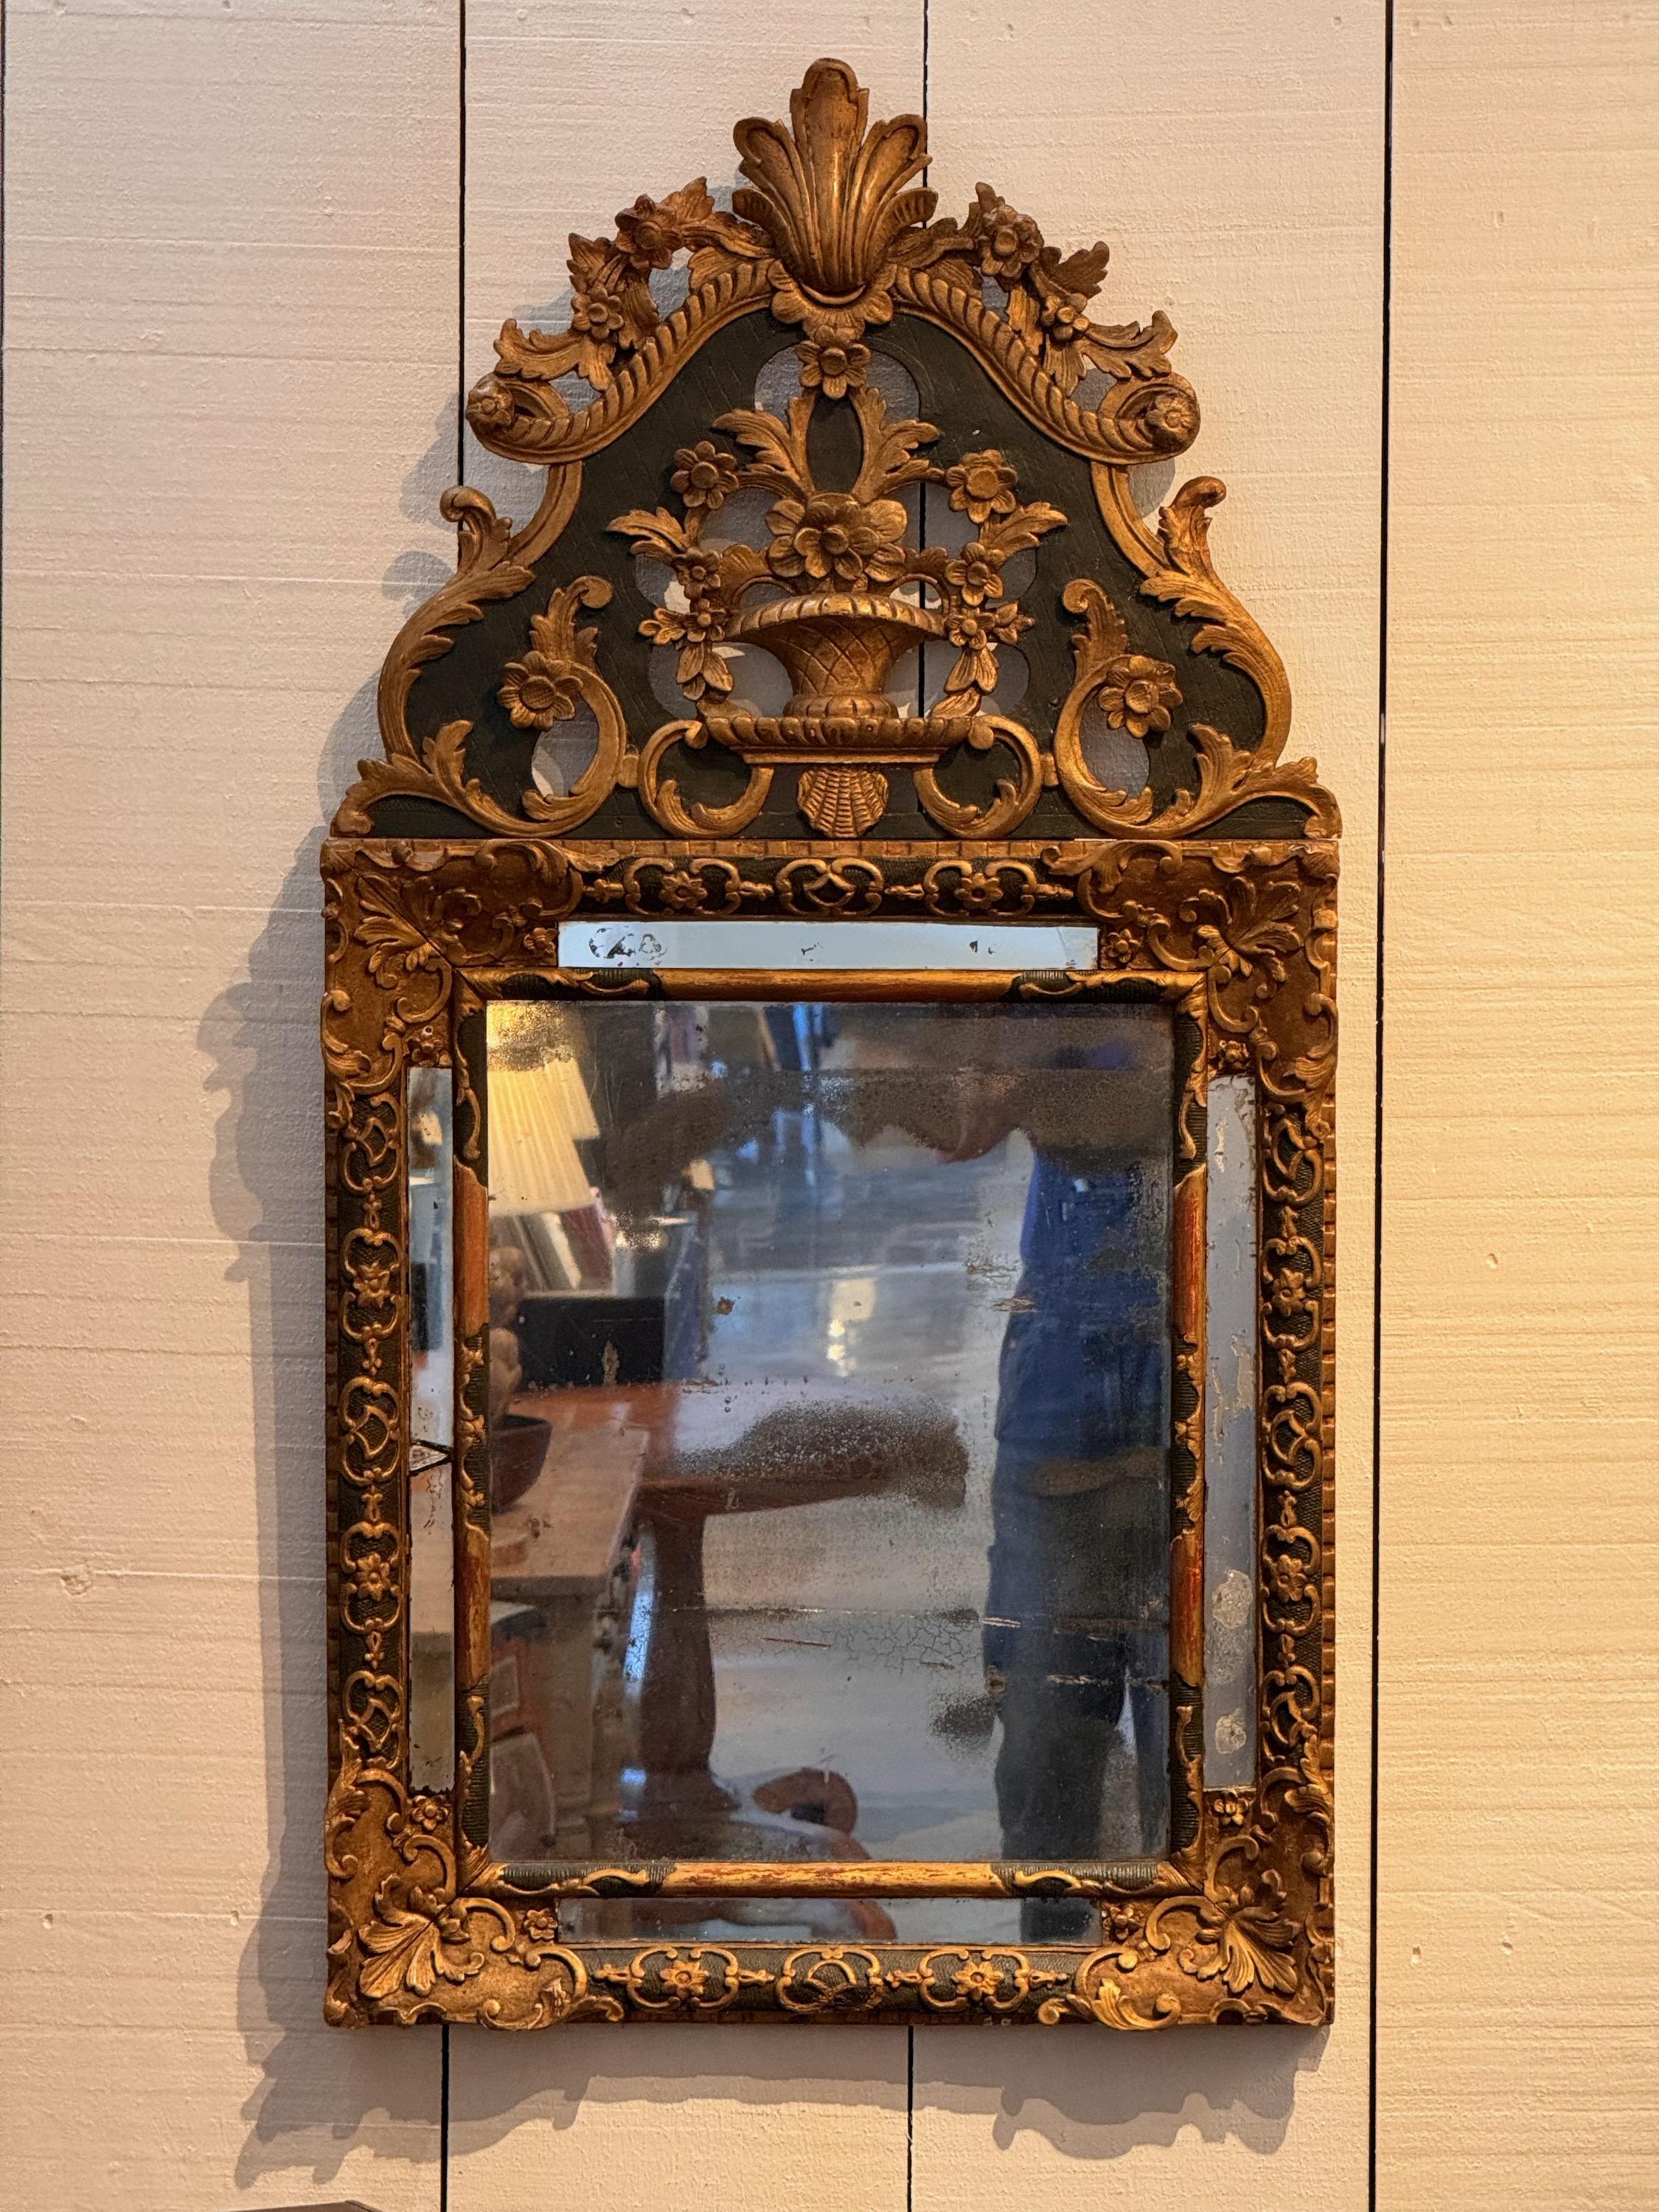 Il s'agit d'un beau miroir français avec des décorations dorées. Beauté instantanée.